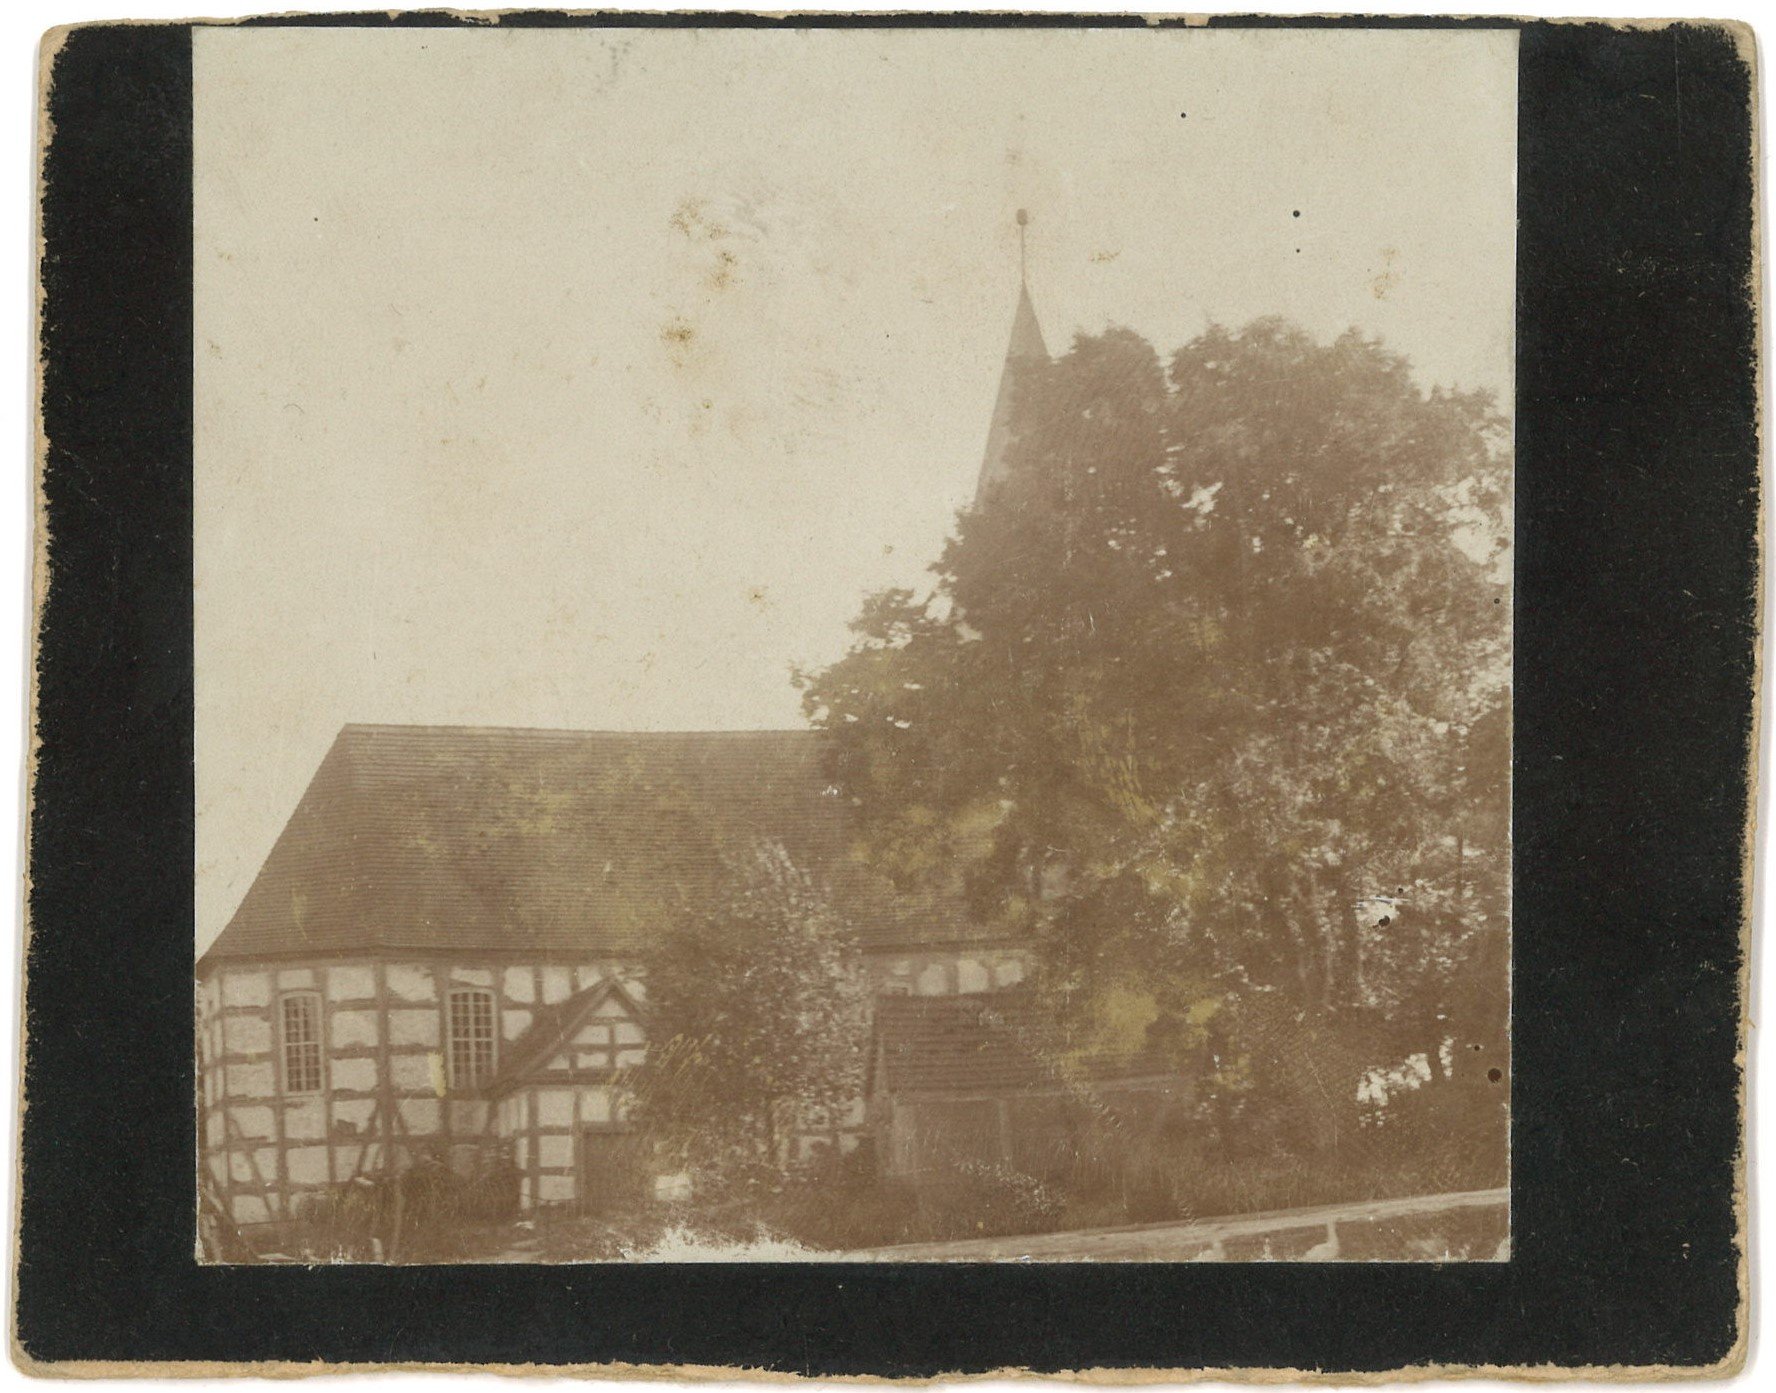 Seeren (Kr. Oststernberg) / Żarzyn: Dorfkirche von Norden (Landesgeschichtliche Vereinigung für die Mark Brandenburg e.V., Archiv CC BY)